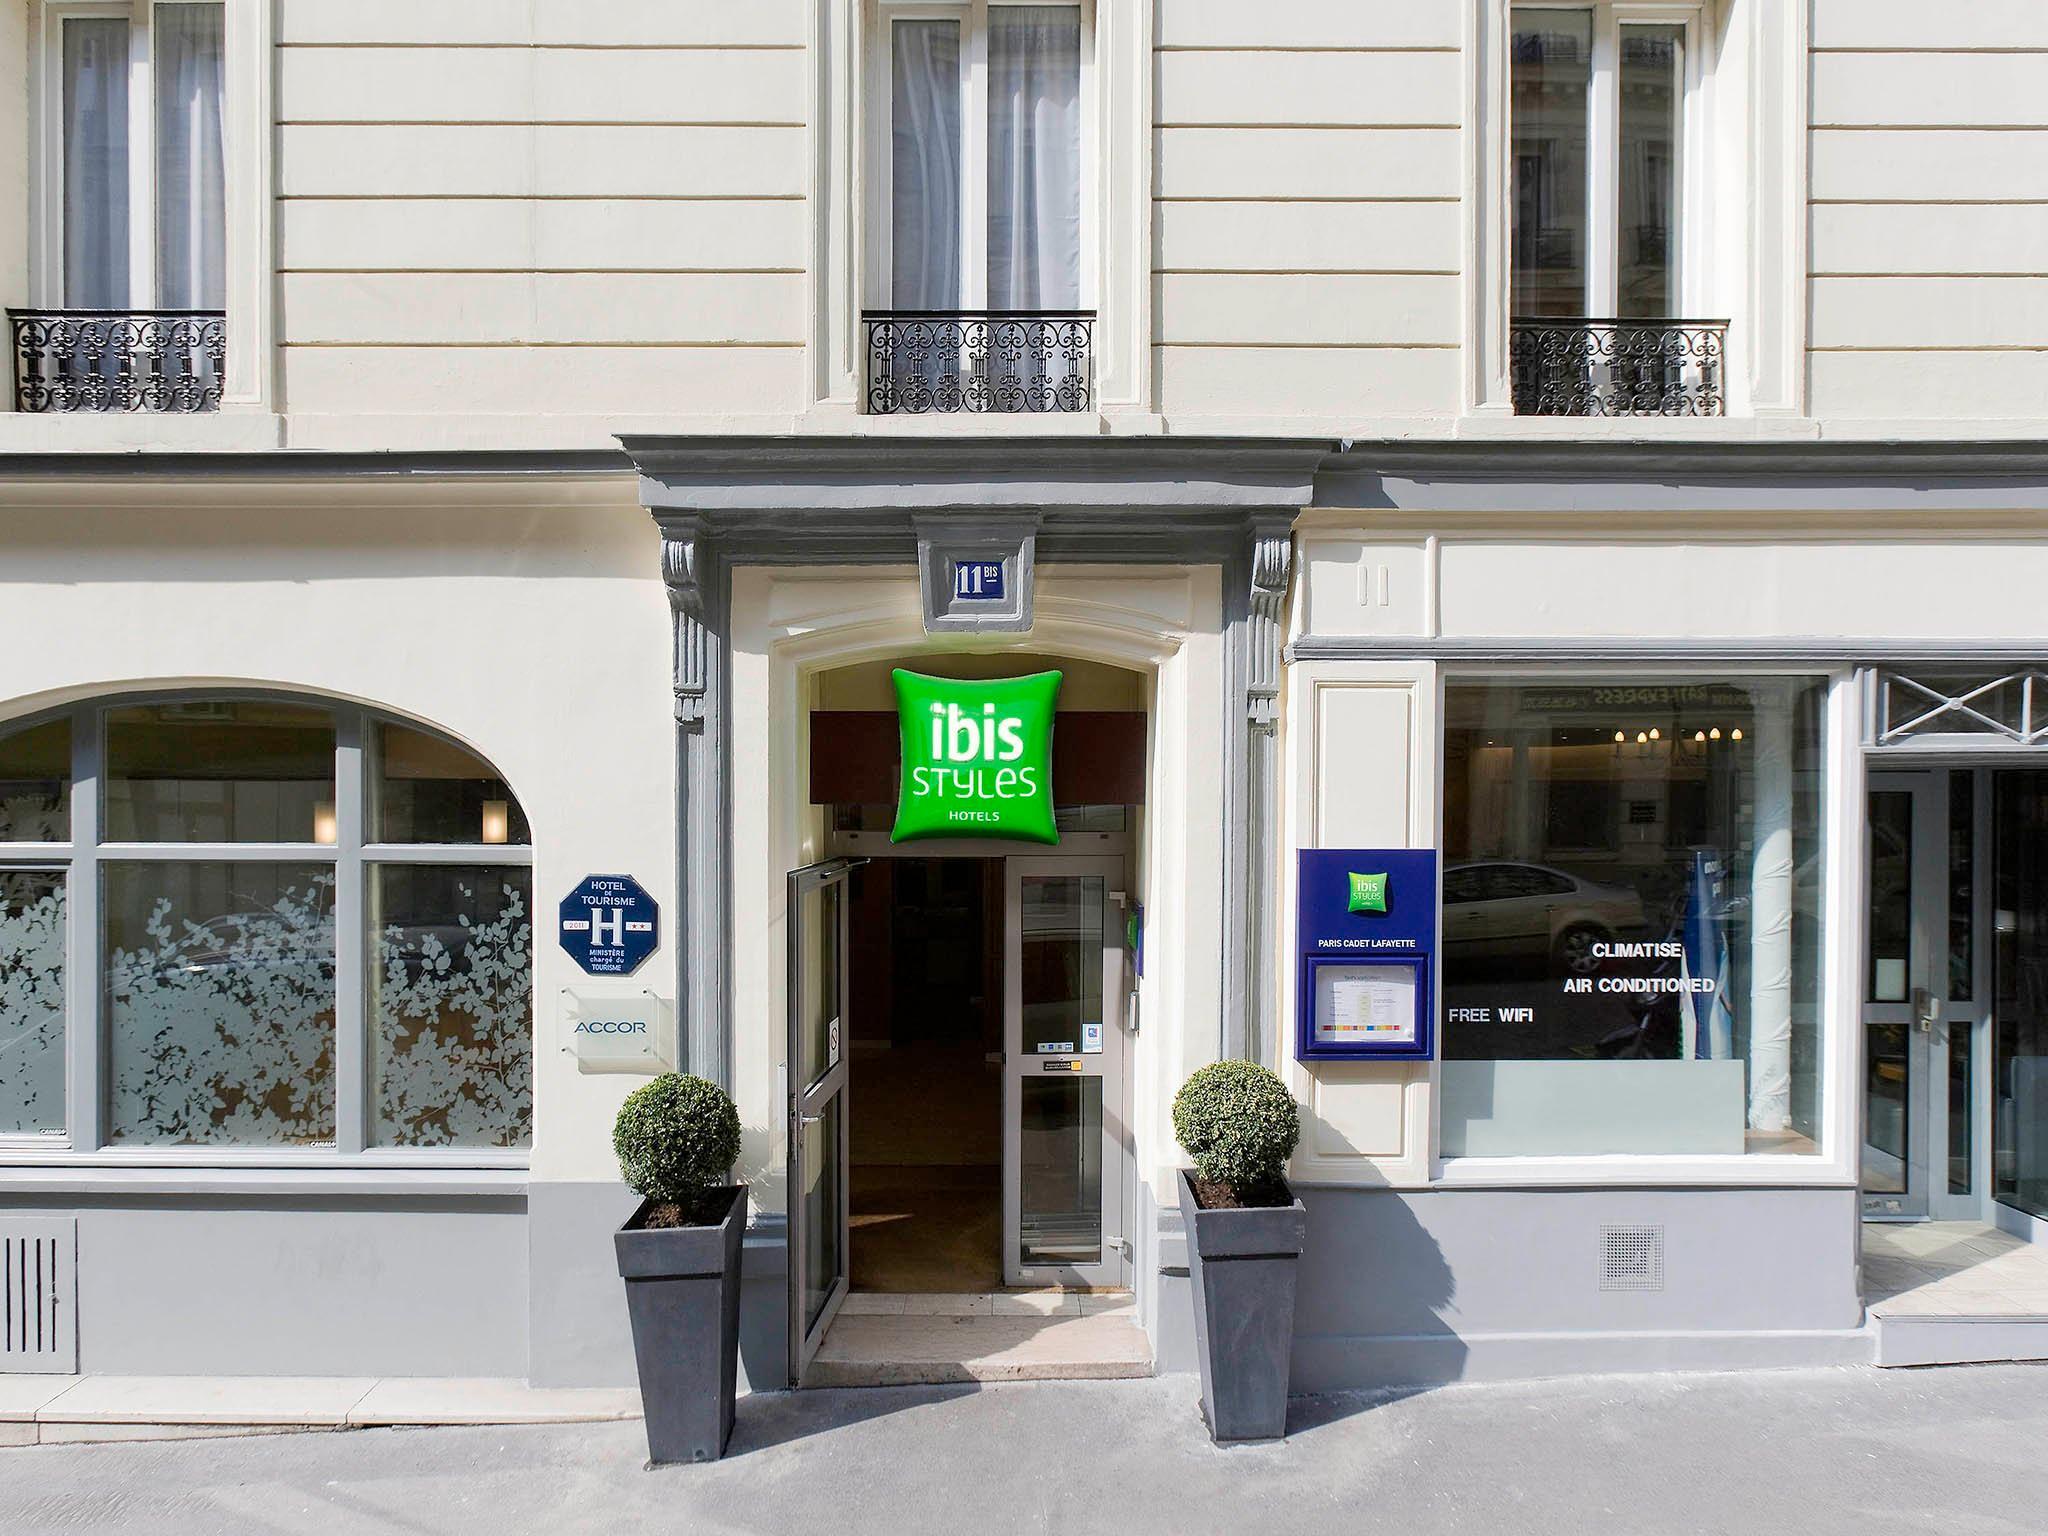 Отель Ibis Styles Paris Cadet Lafayette Экстерьер фото